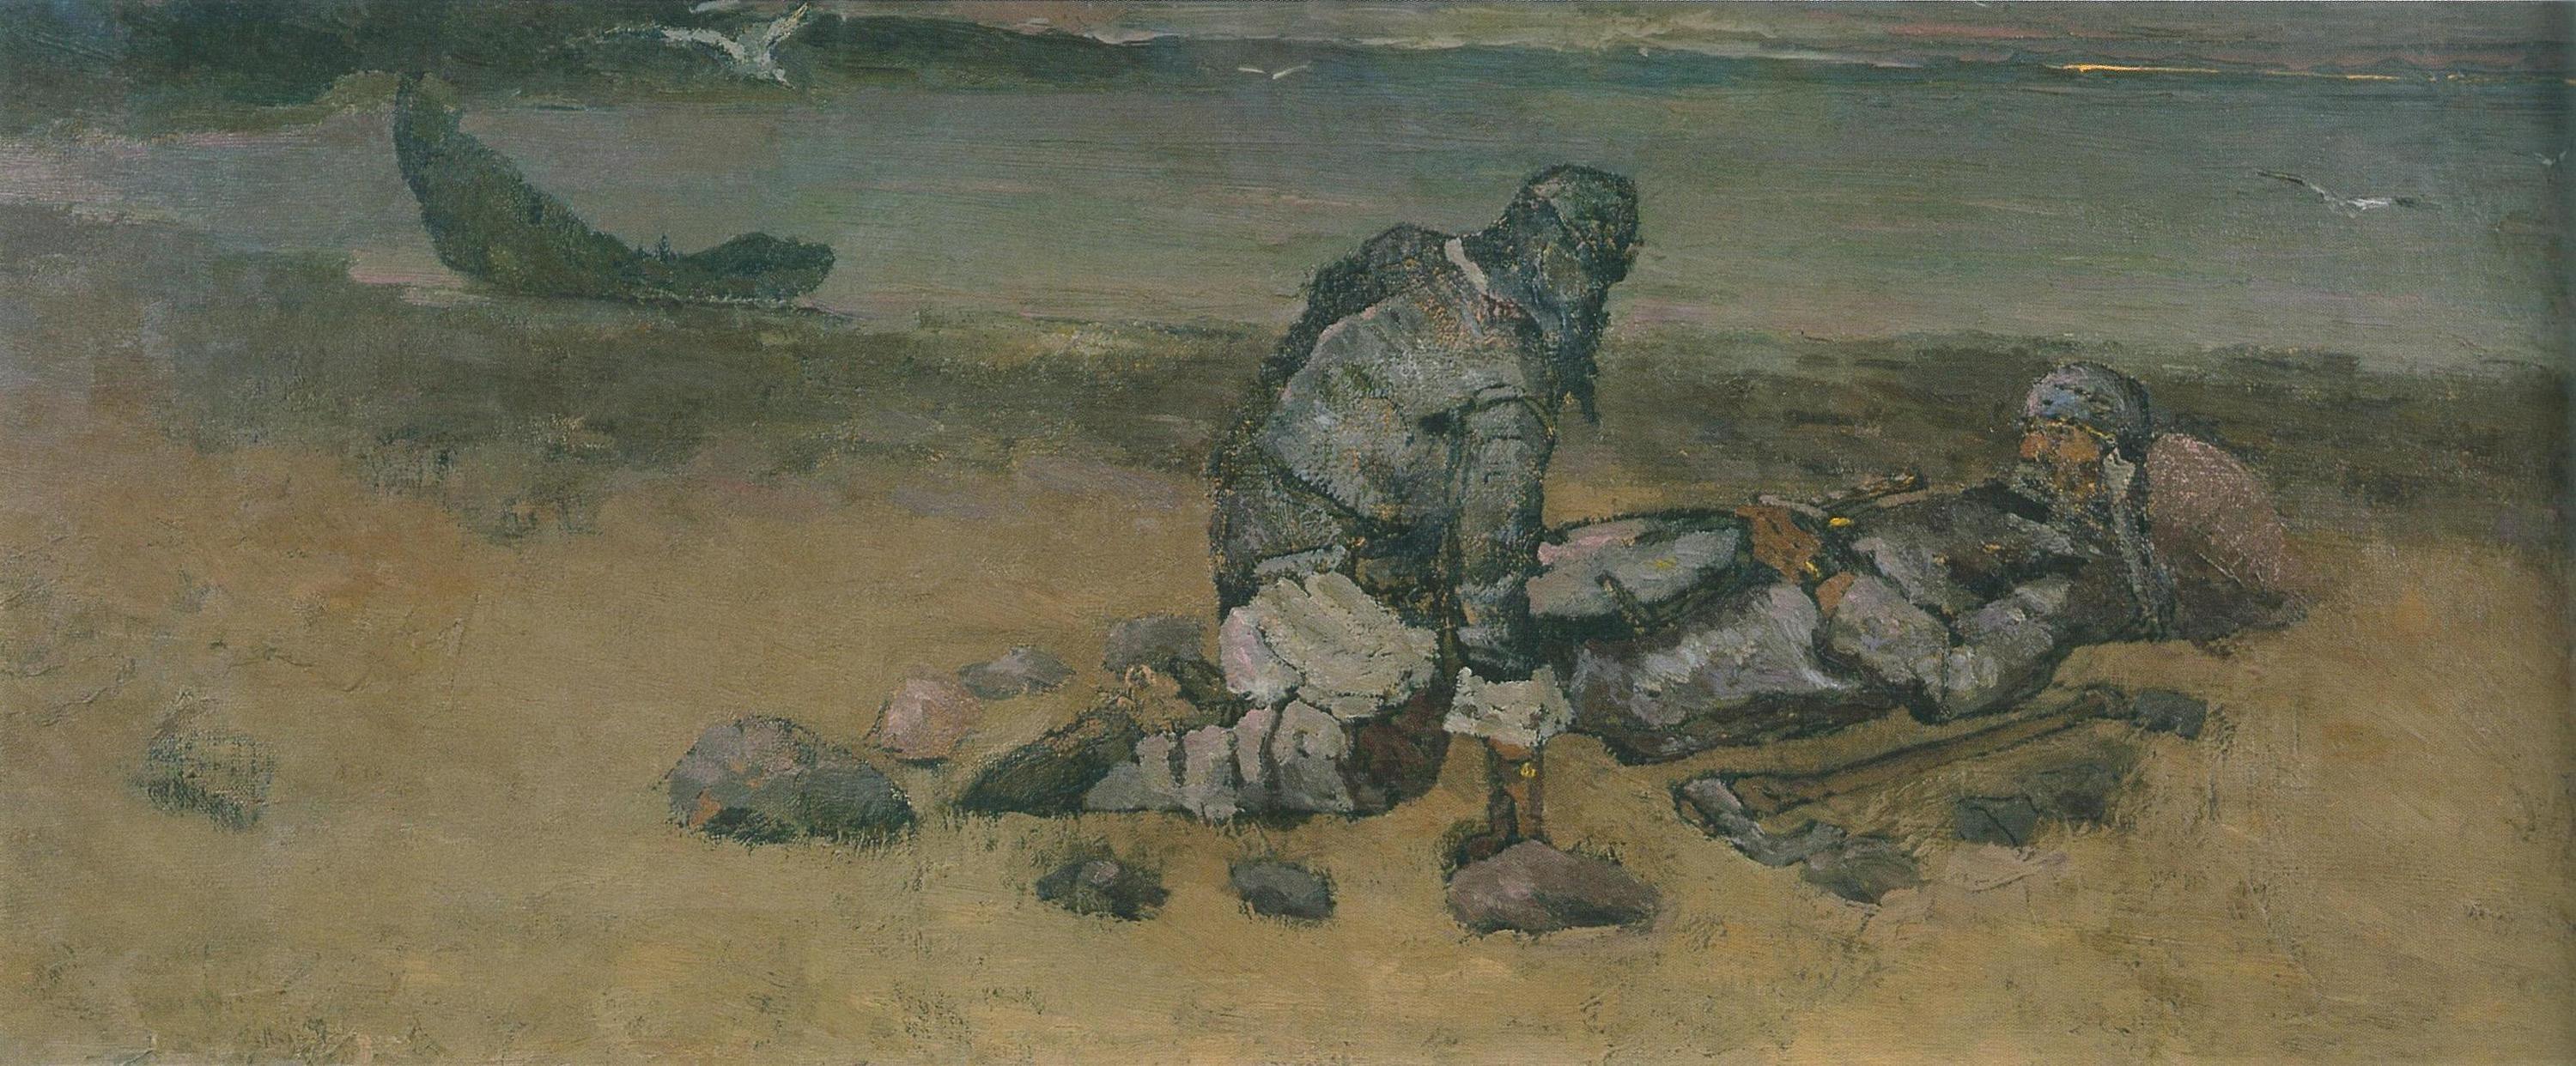 Н.К.Рерих. На чужом берегу. 1897